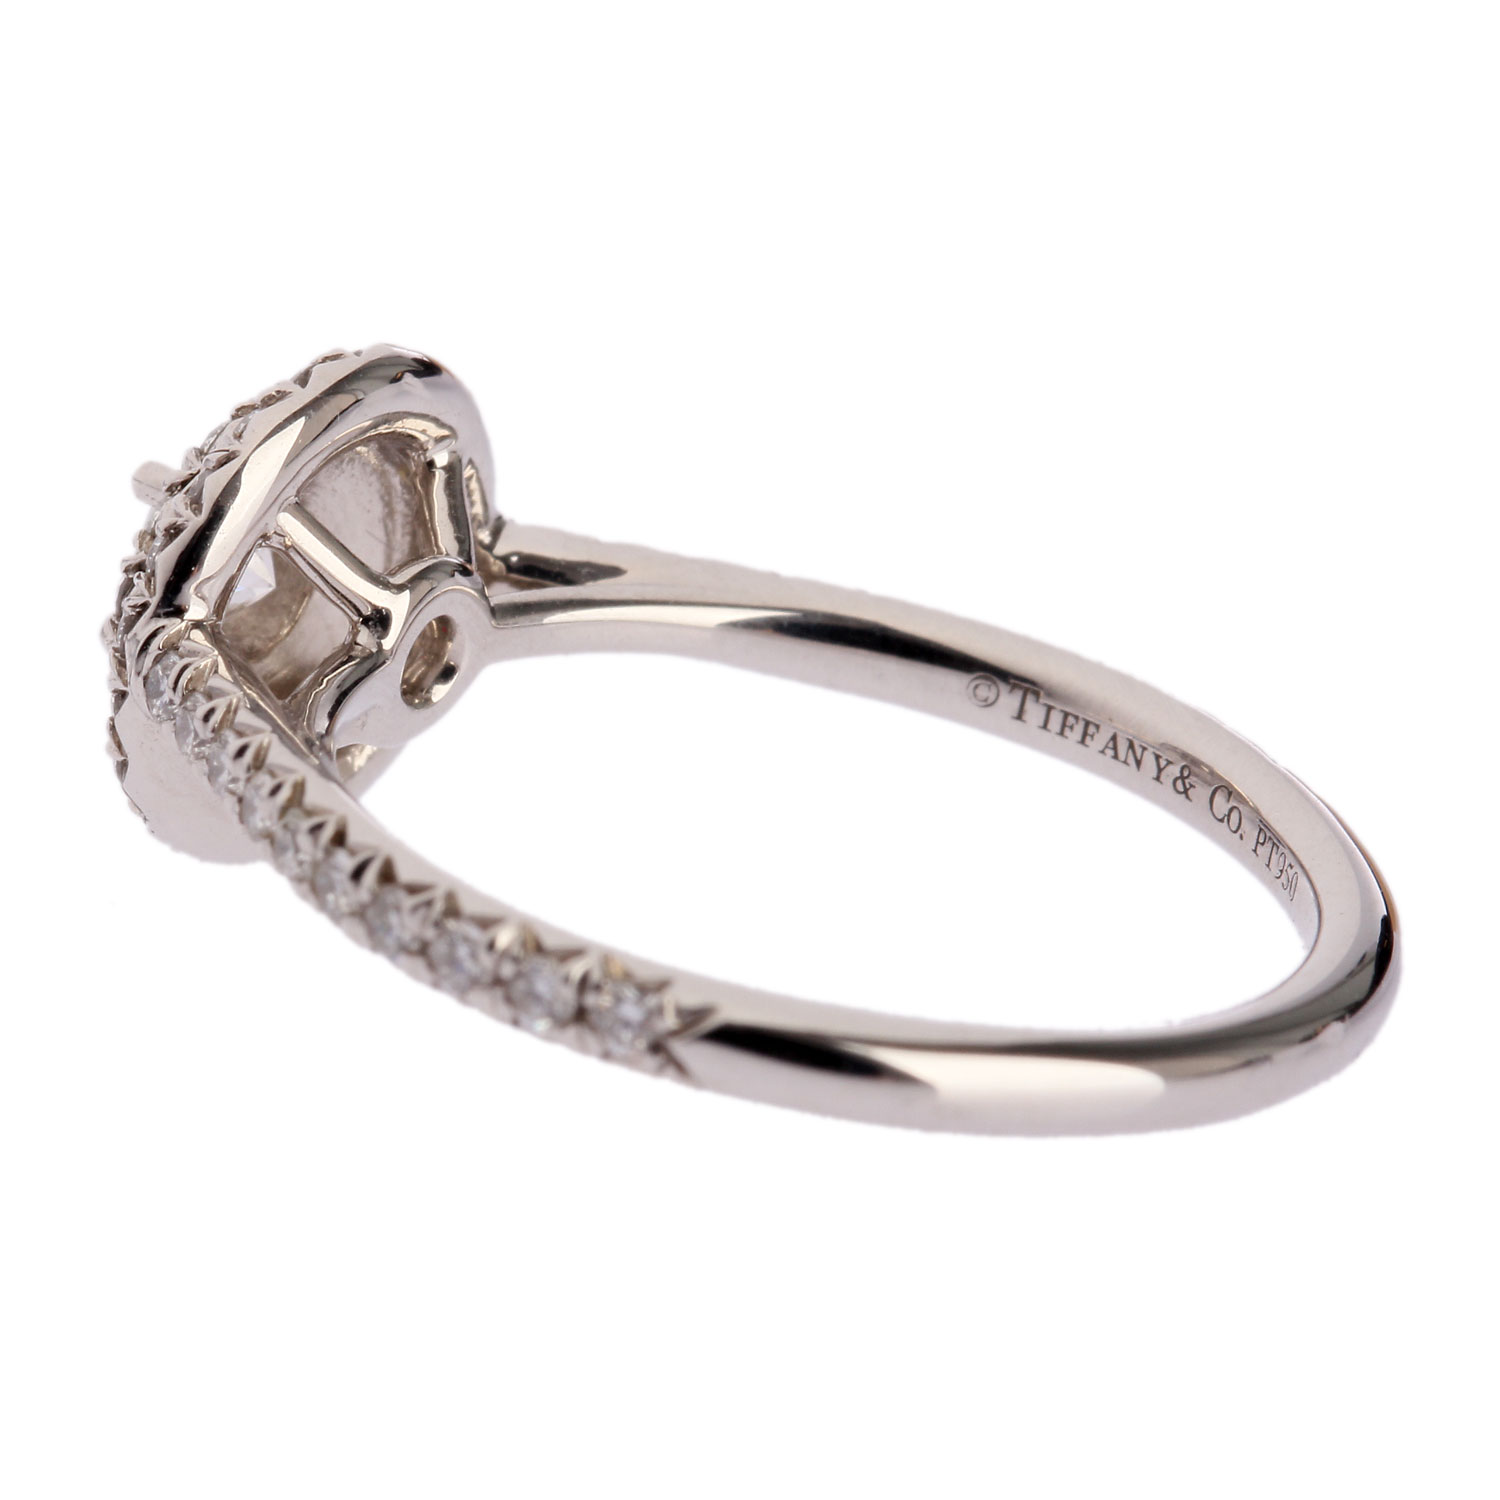 高清图|蒂芙尼铂金镶嵌椭圆形钻石戒指图片1|腕表之家-珠宝